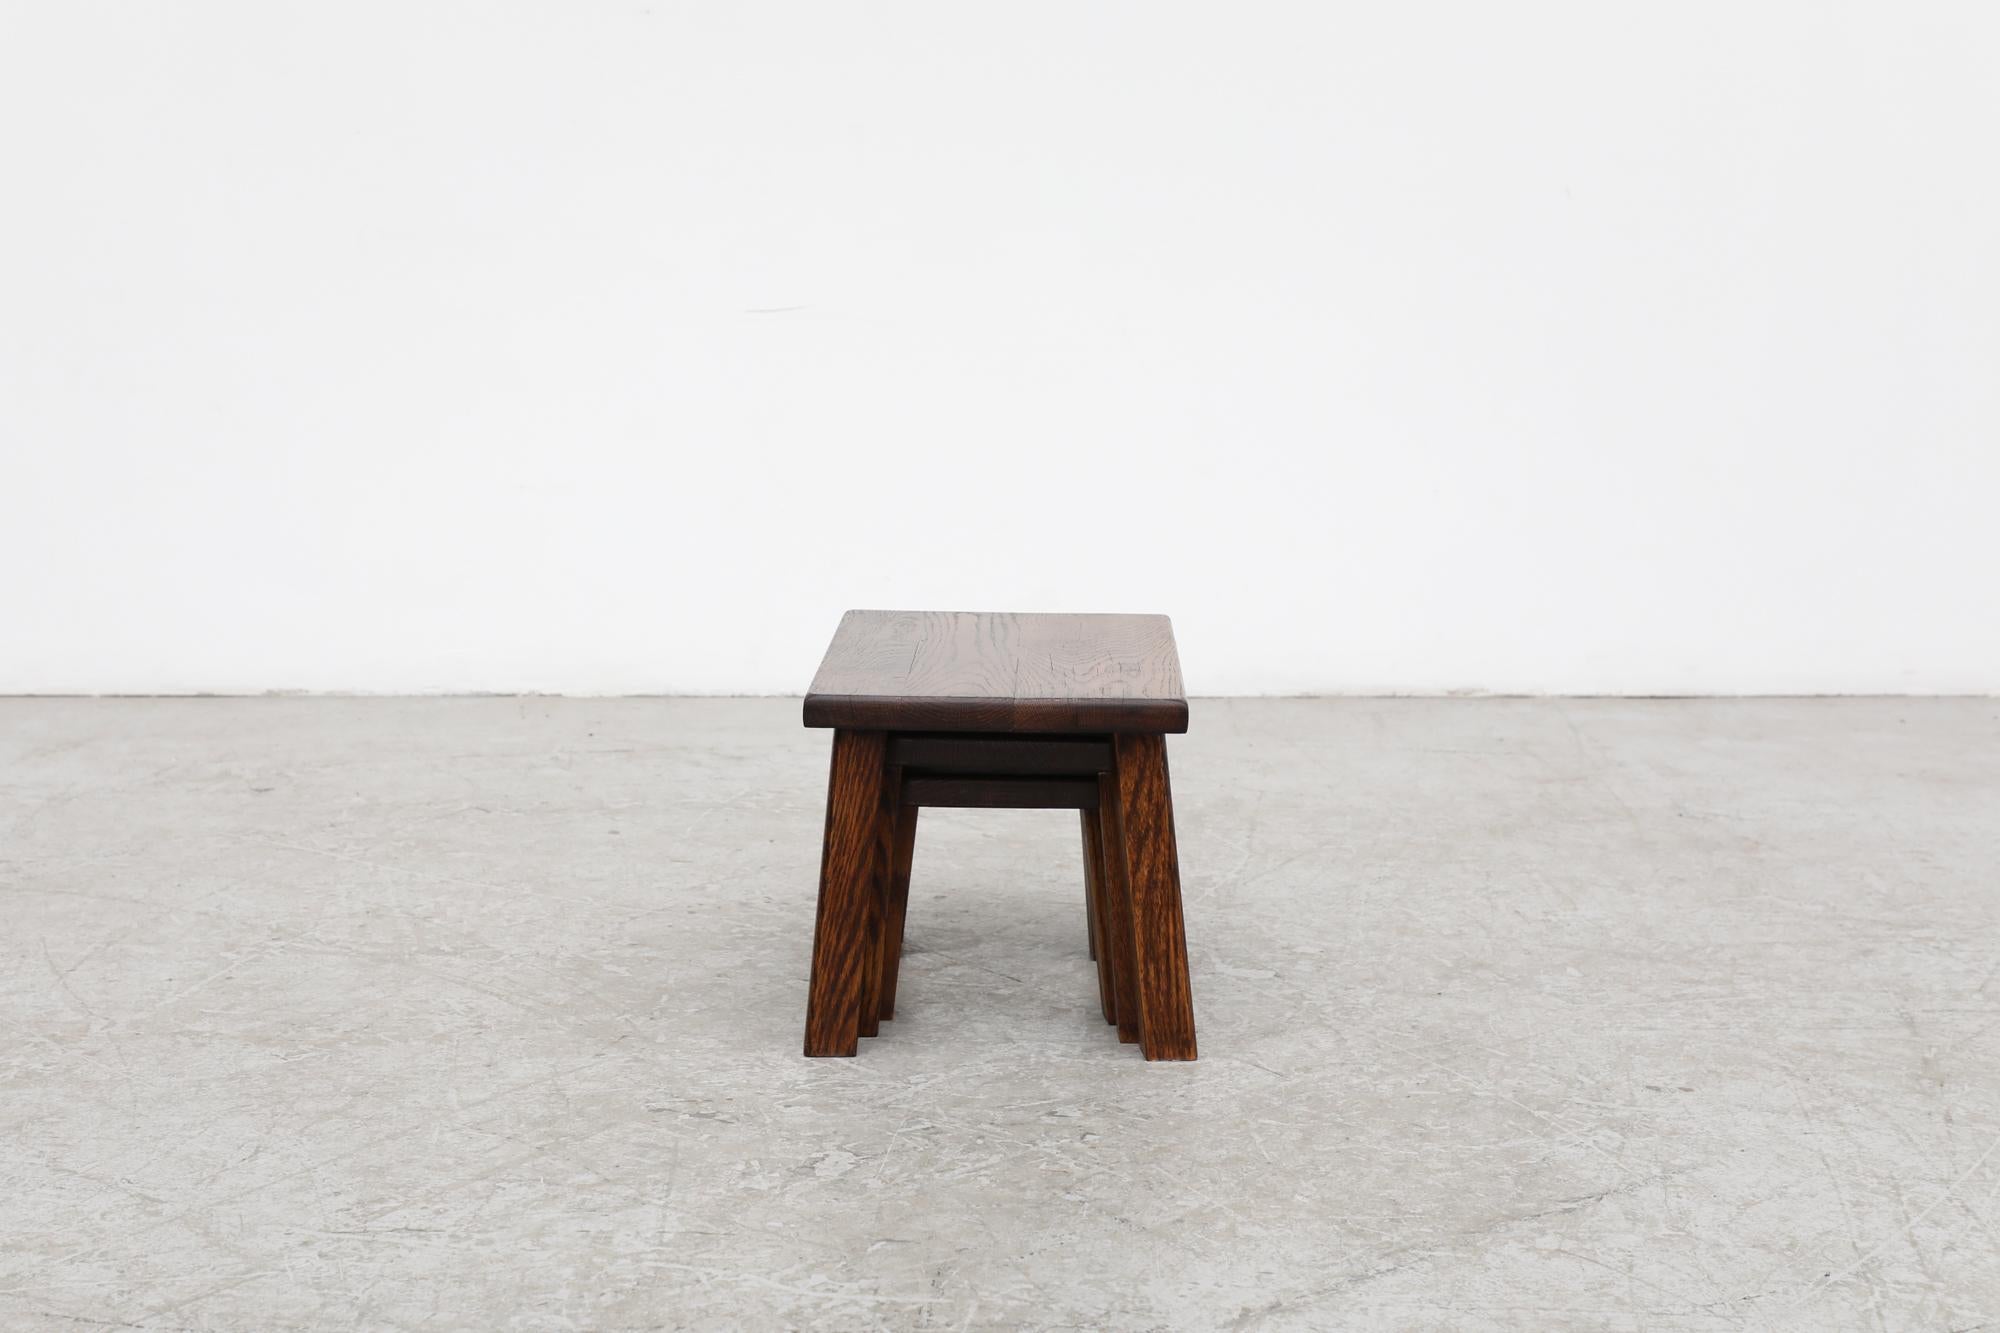 Chêne Tables gigognes en chêne brut inspirées de Pierre Chapo avec pieds angulaires épais en vente